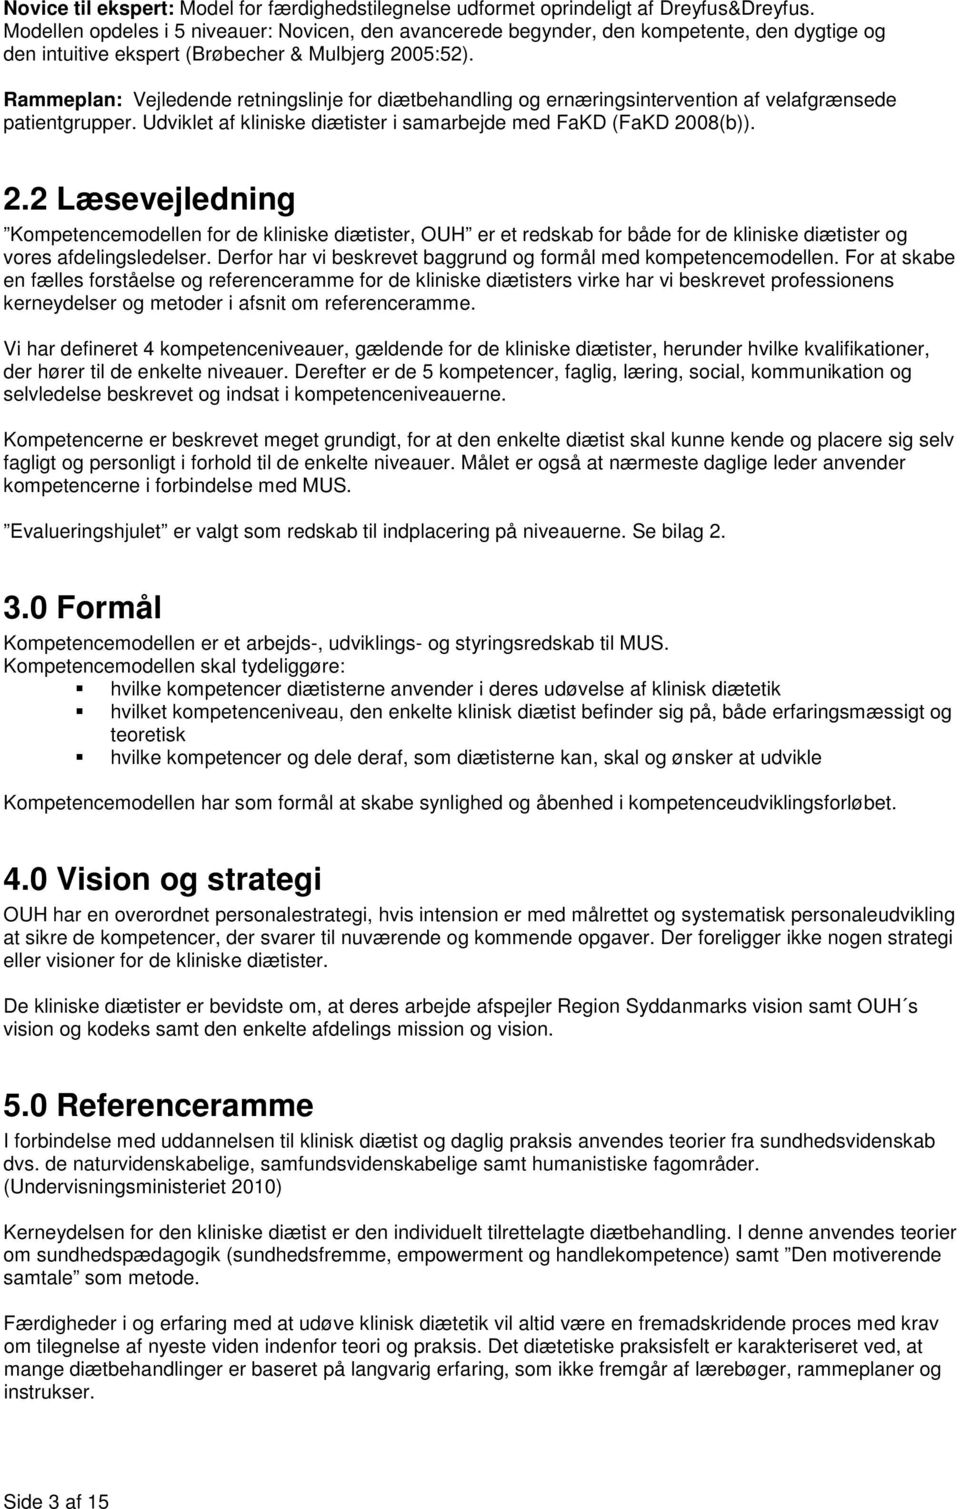 Kompetencemodel - Kliniske diætister - PDF Gratis download